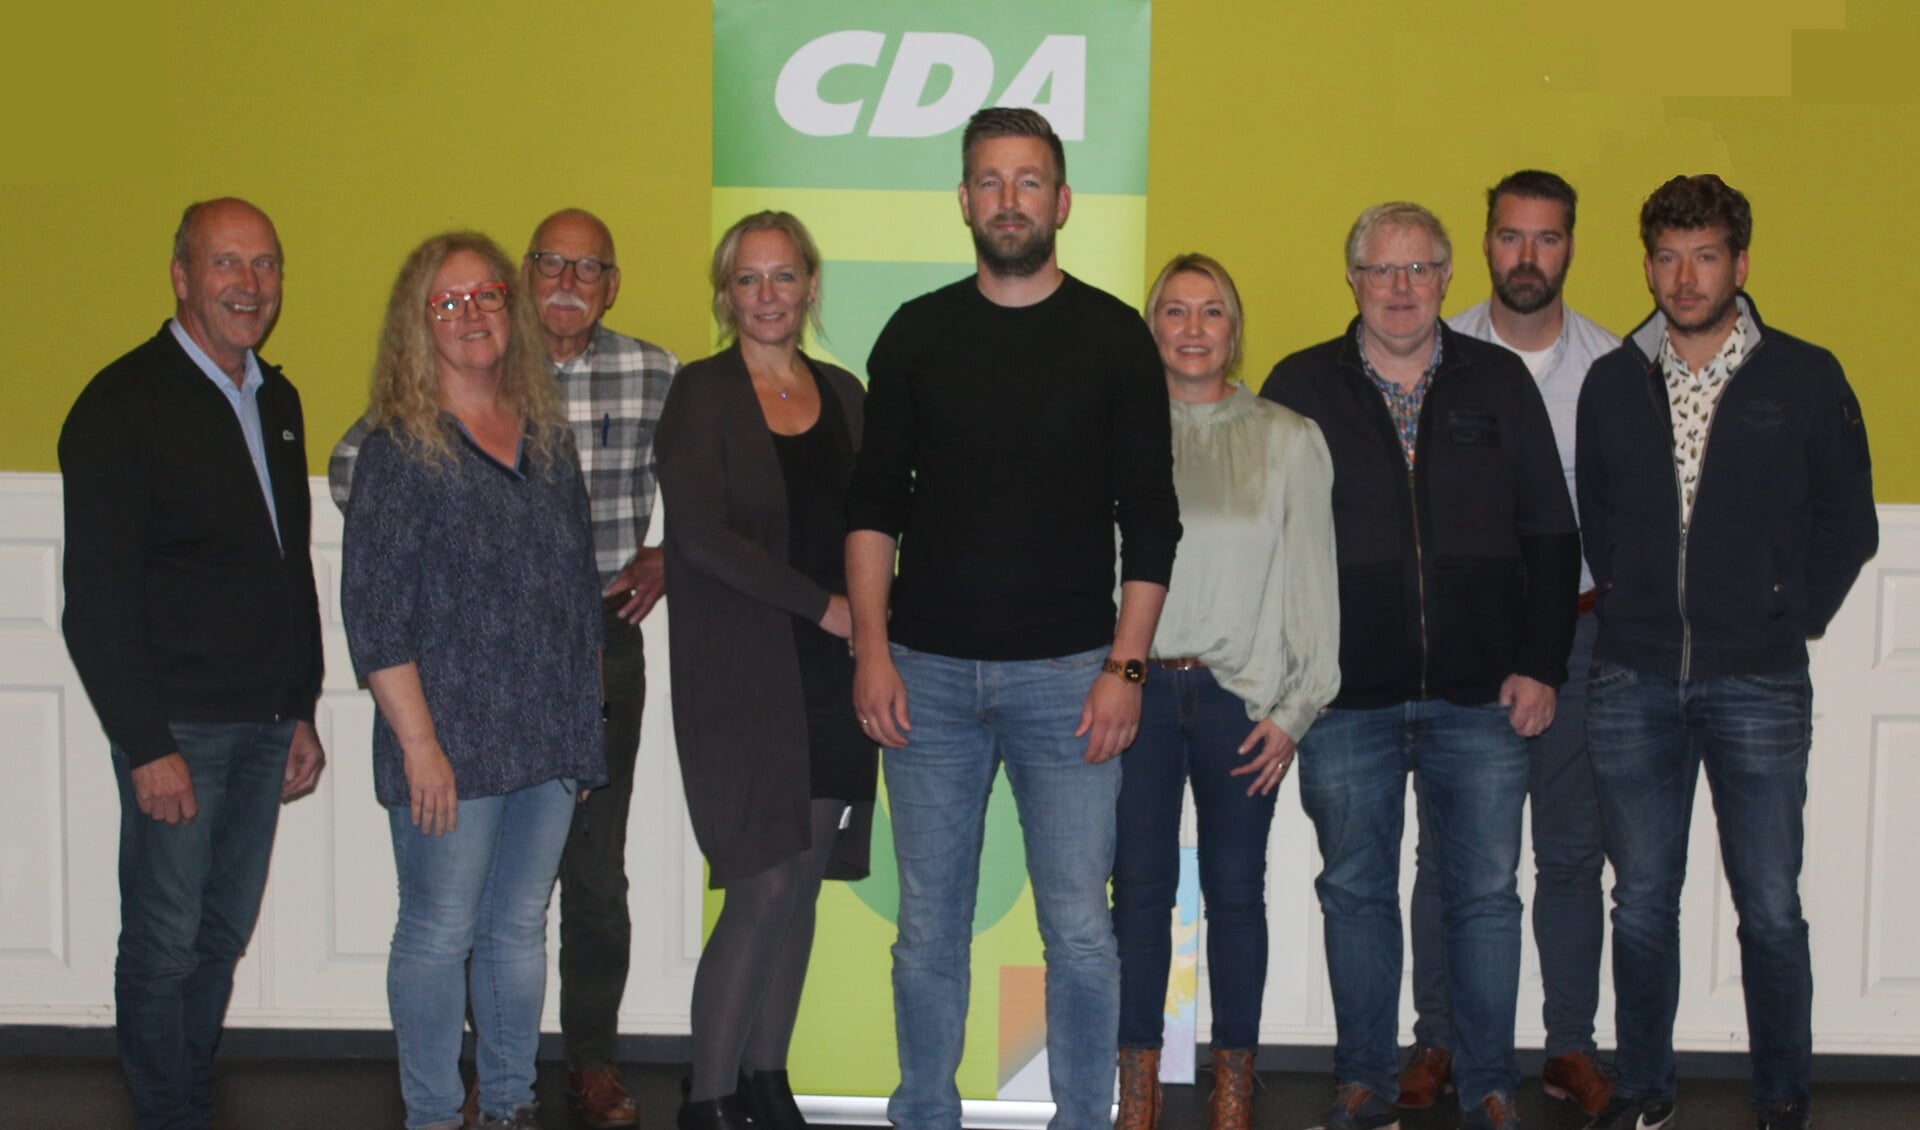 De eerste tien kandidaten van het CDA Westerwolde, met de nieuwe lijstrekker Harm Jan Kuper in het midden. John van Meekeren ontbreekt. (foto: CDA Westerwolde)